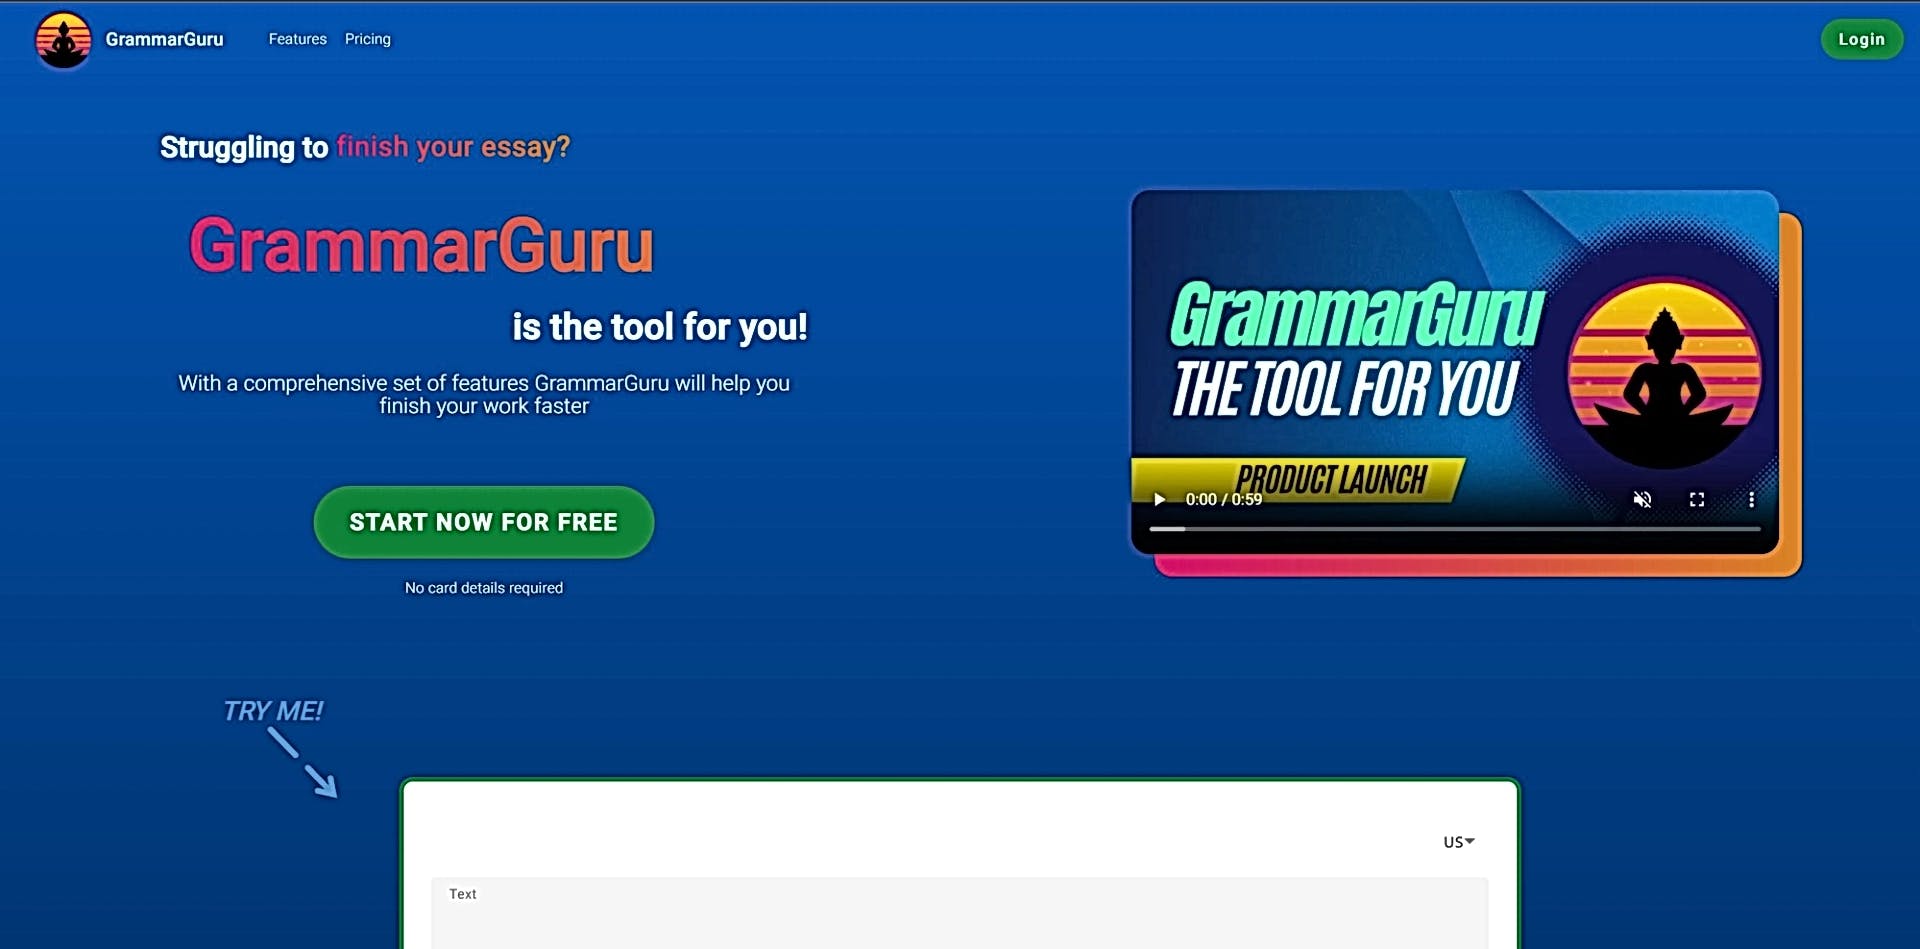 GrammarGuru featured